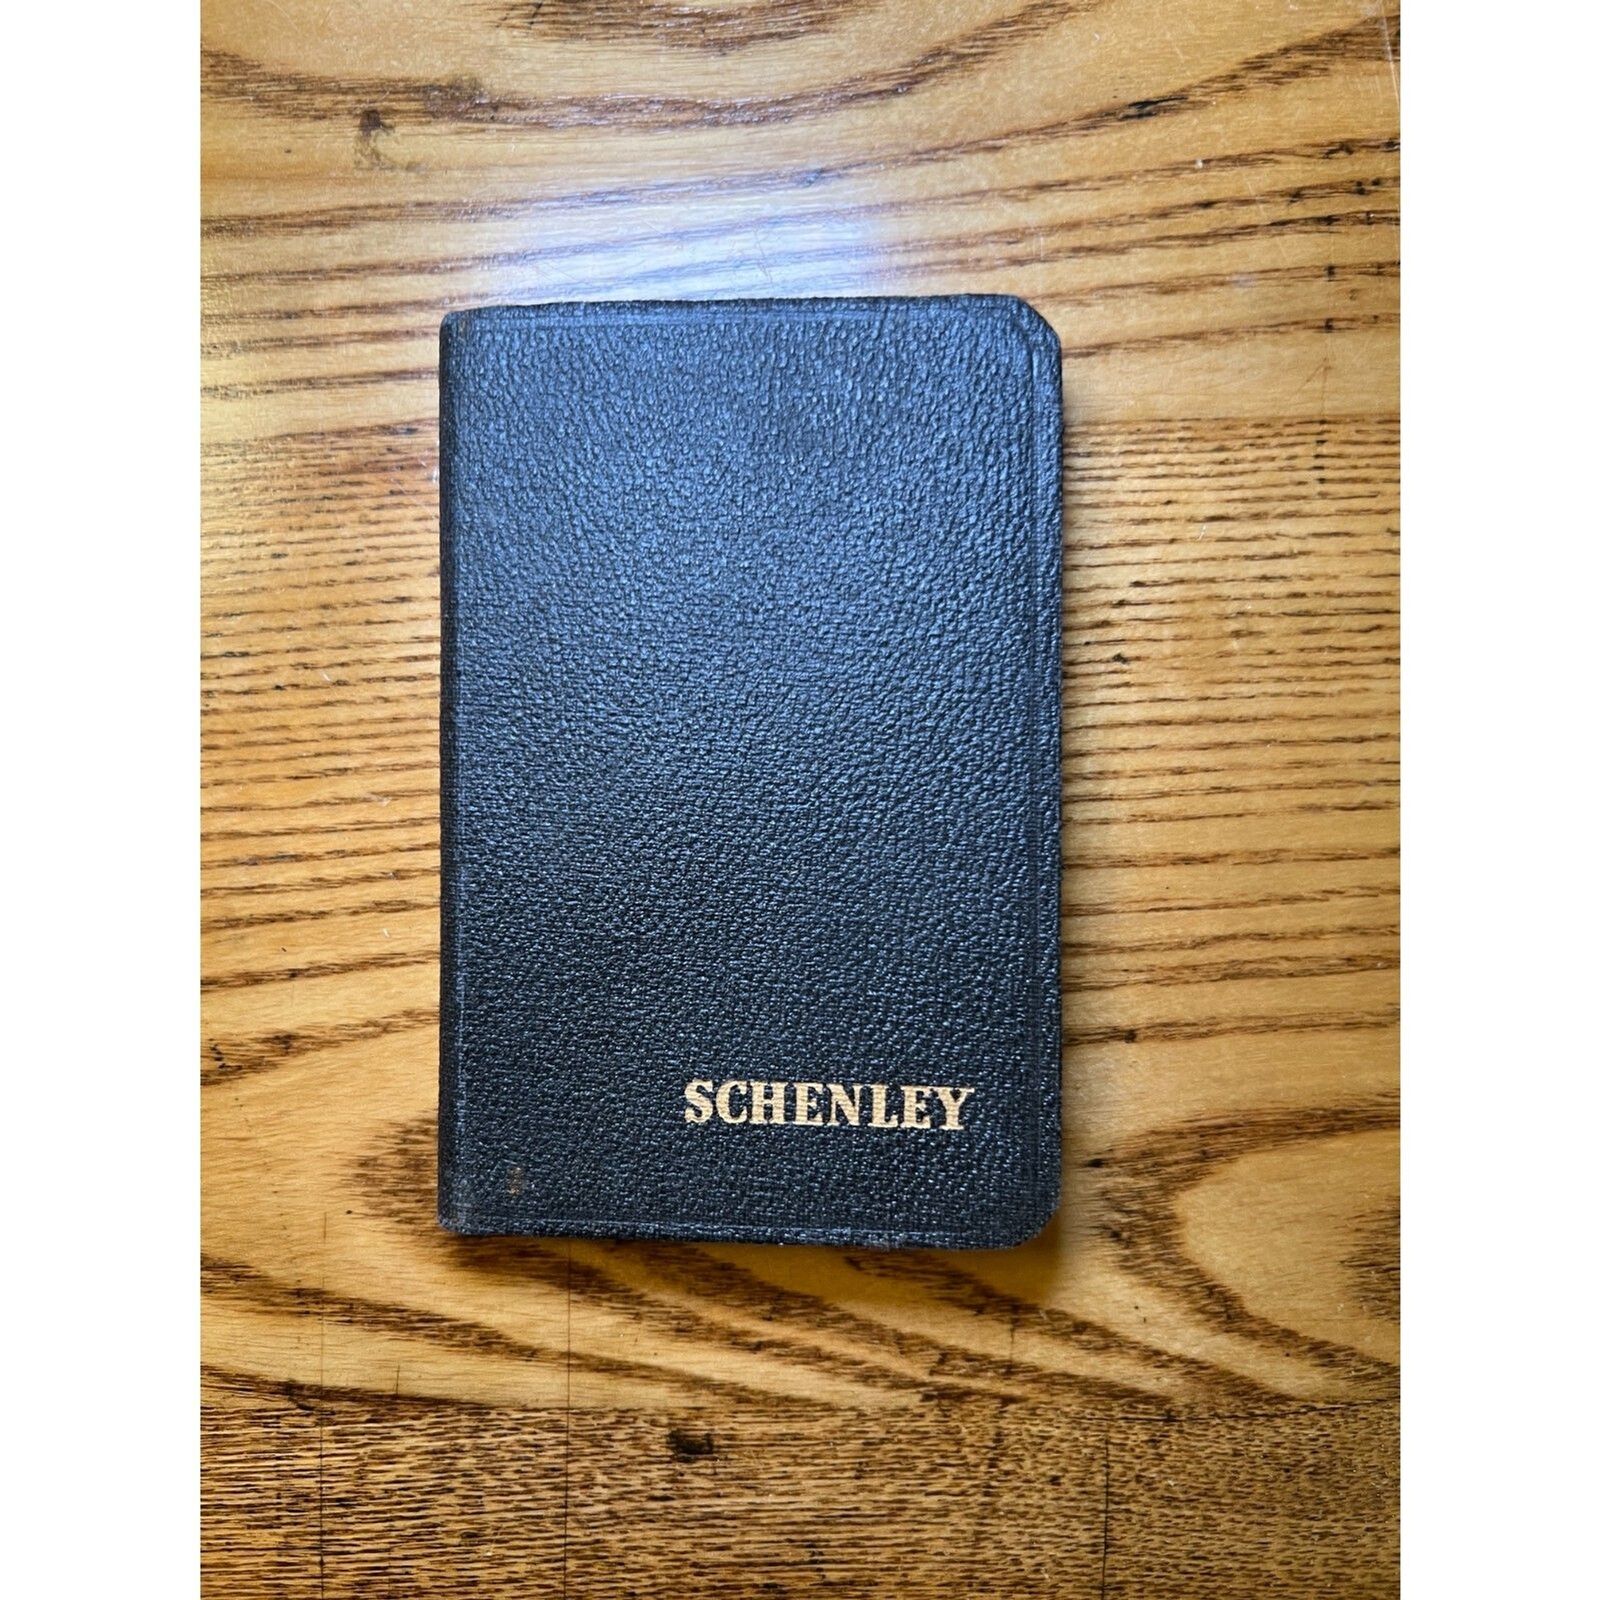 Vintage 1947 Schenley Reserve Pocket Calendar and Reference Book